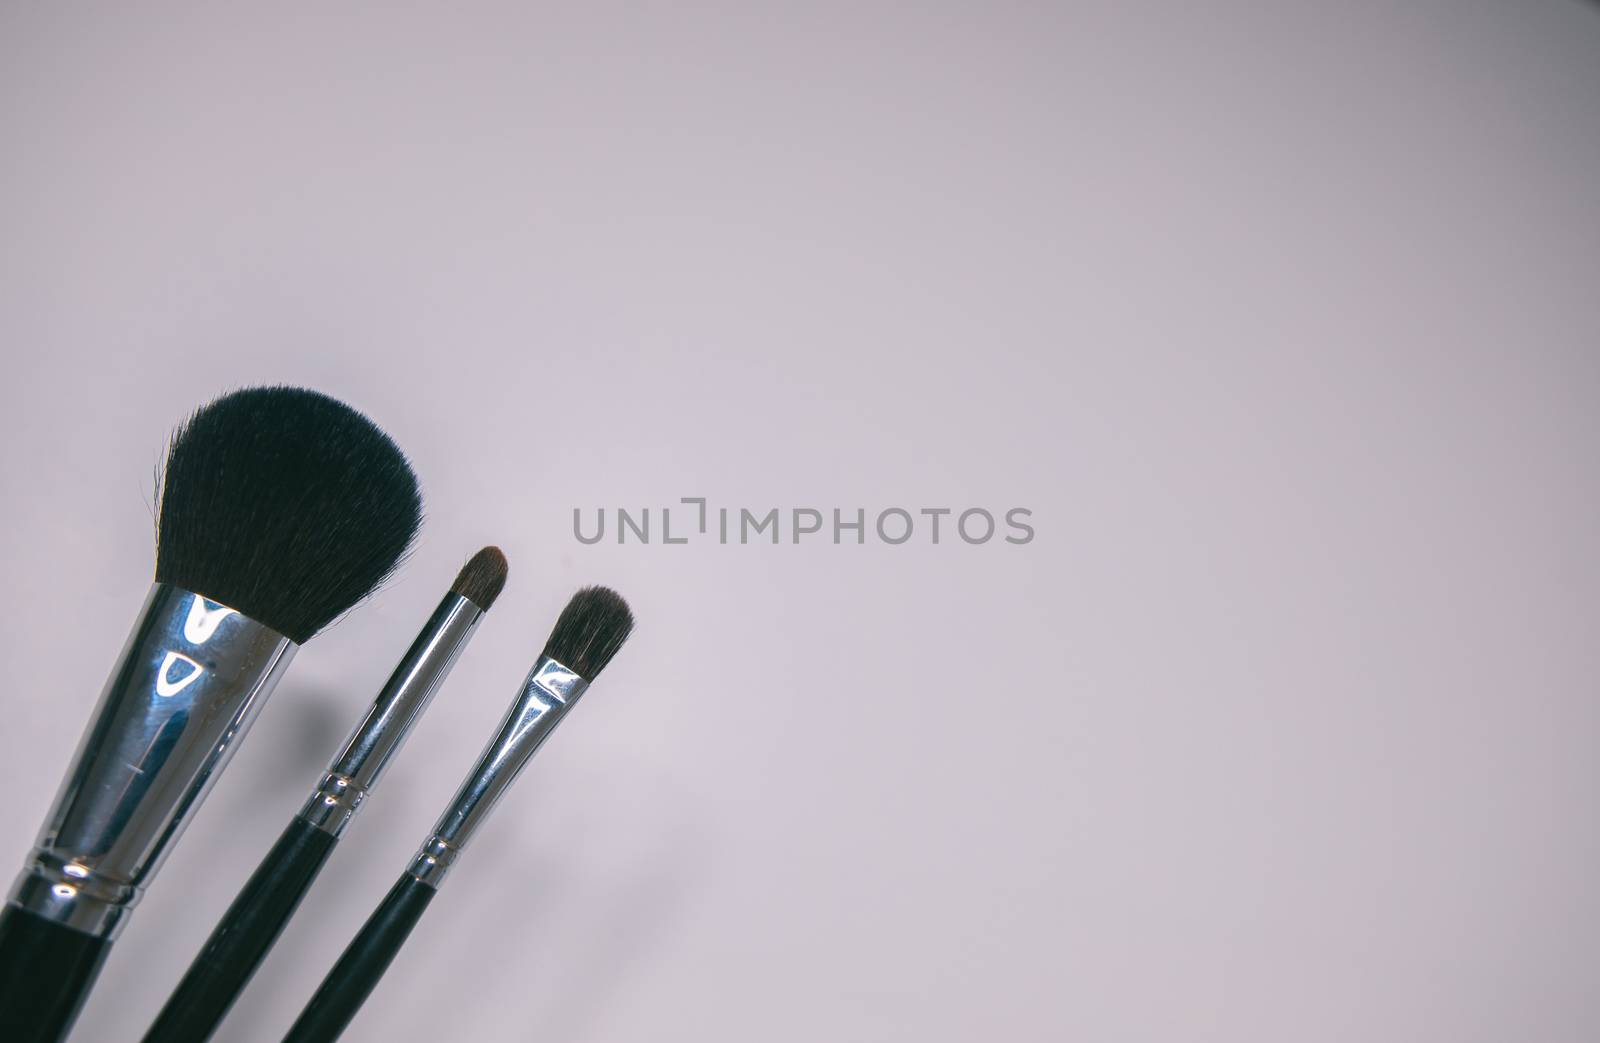 Makeup brushes set on white background by tadeush89